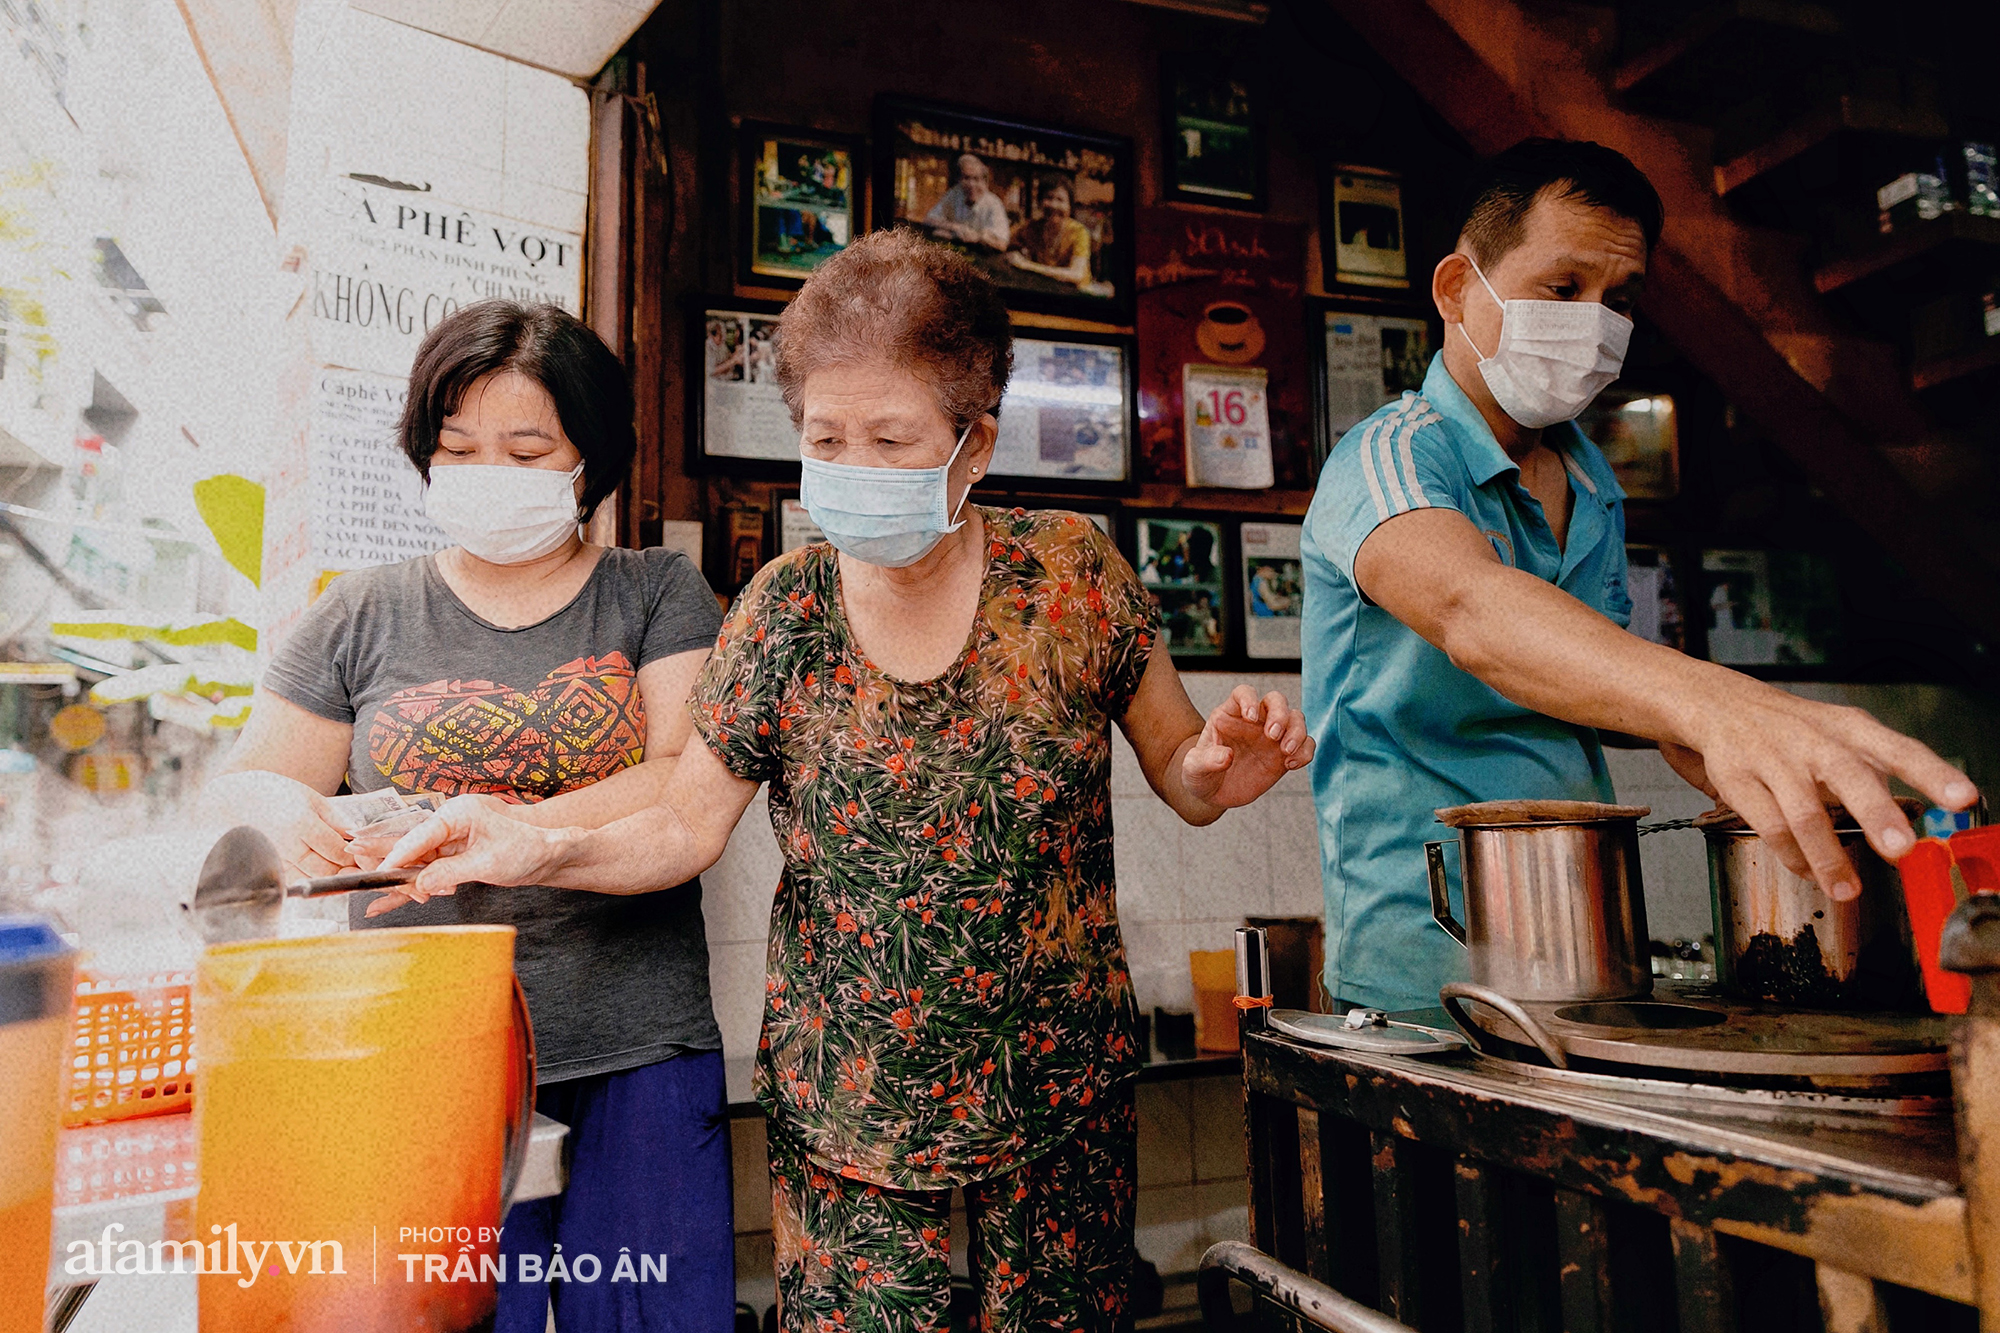 Quán cà phê Vợt nổi tiếng suốt 60 năm chưa từng nghỉ 1 ngày, ấy mà nhờ dịch mà nay mới được &quot;thức giấc&quot;, khách Sài Gòn gặp lại mừng mừng, tủi tủi bên góc quen - Ảnh 8.